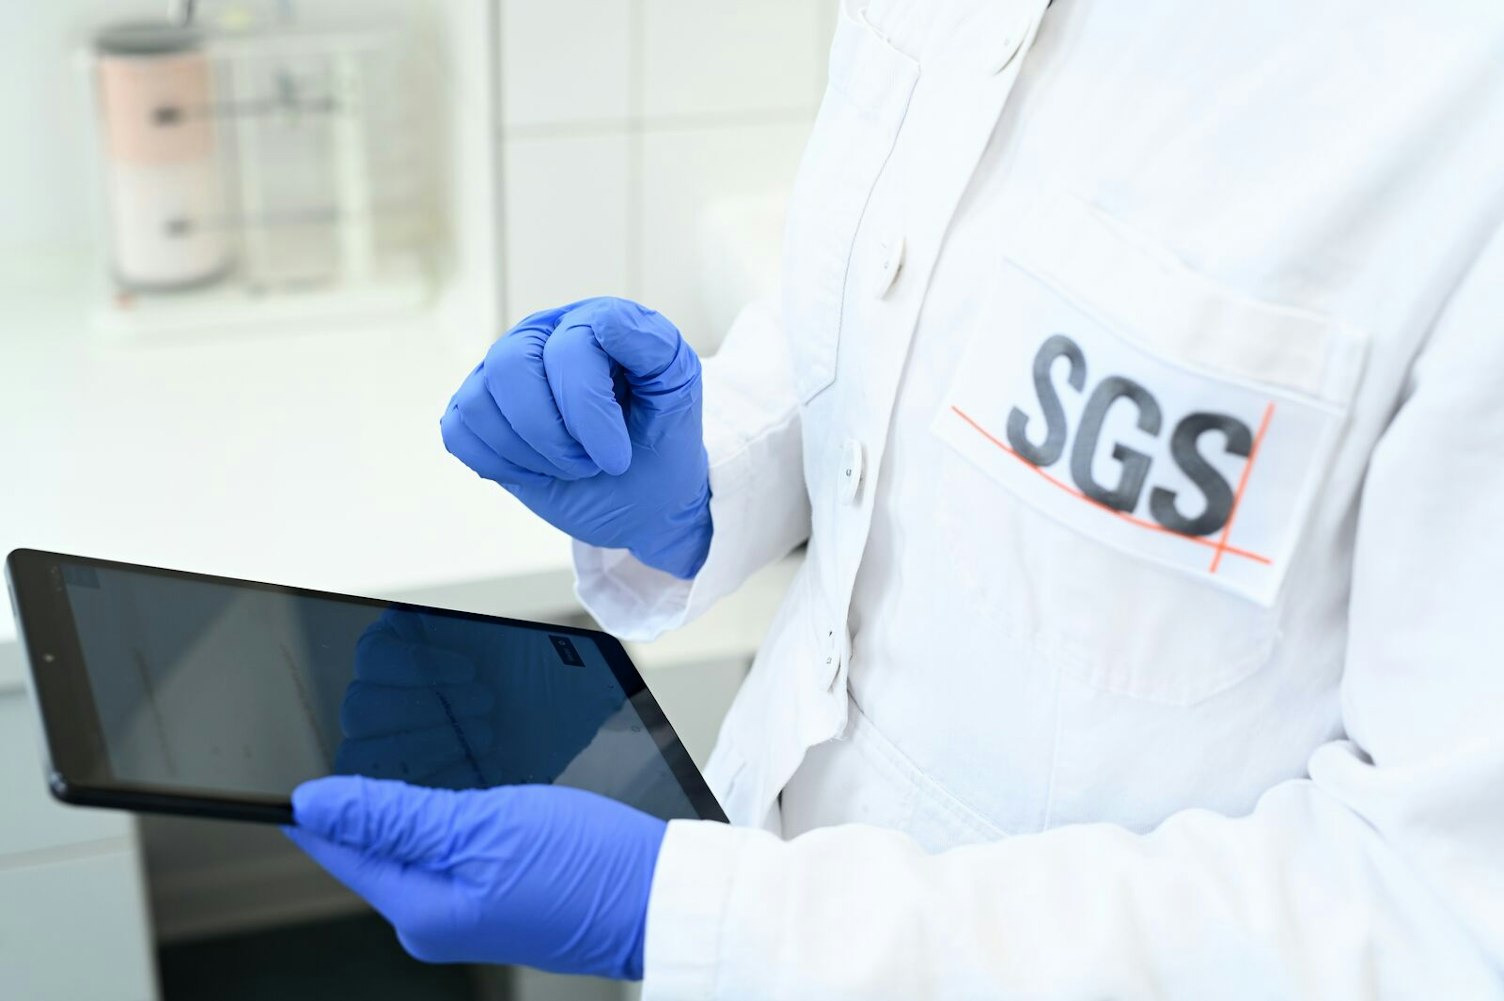 SGS 德國漢堡 Fresenius 化妝品實驗室分析研究所